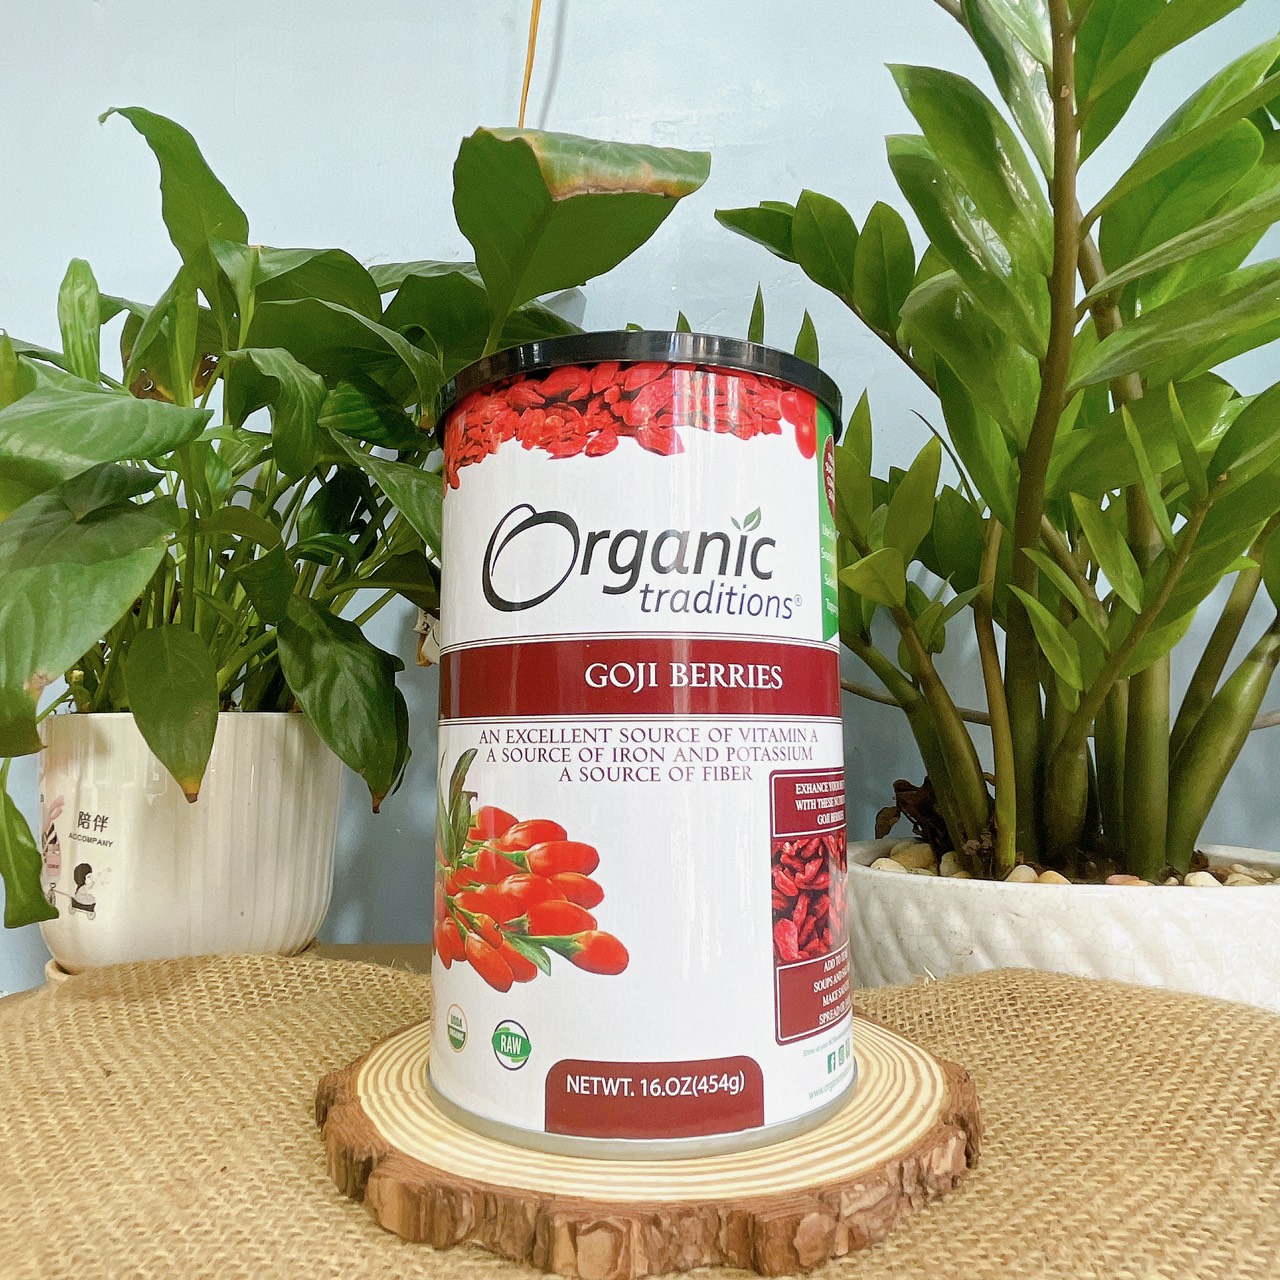 Kỷ Tử Khô Organic Traditions Nhập Khẩu Mỹ - Kỷ Tử Đỏ Hữu Cơ Sấy Khô Hộp 454gr